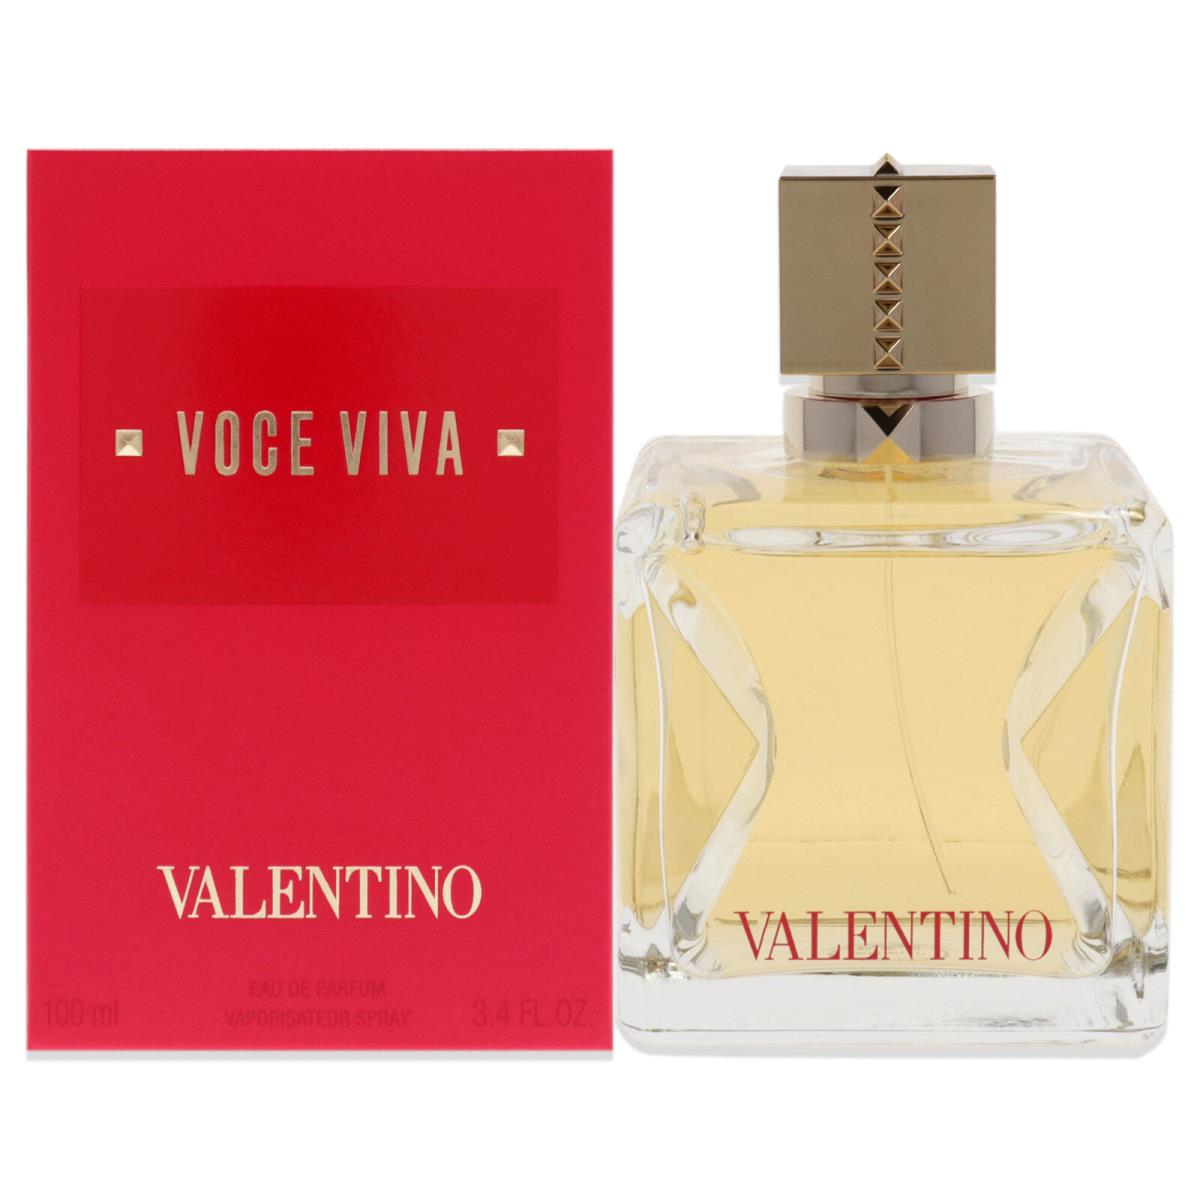 Voce Viva by Valentino For Women - 3.4 oz Edp Spray